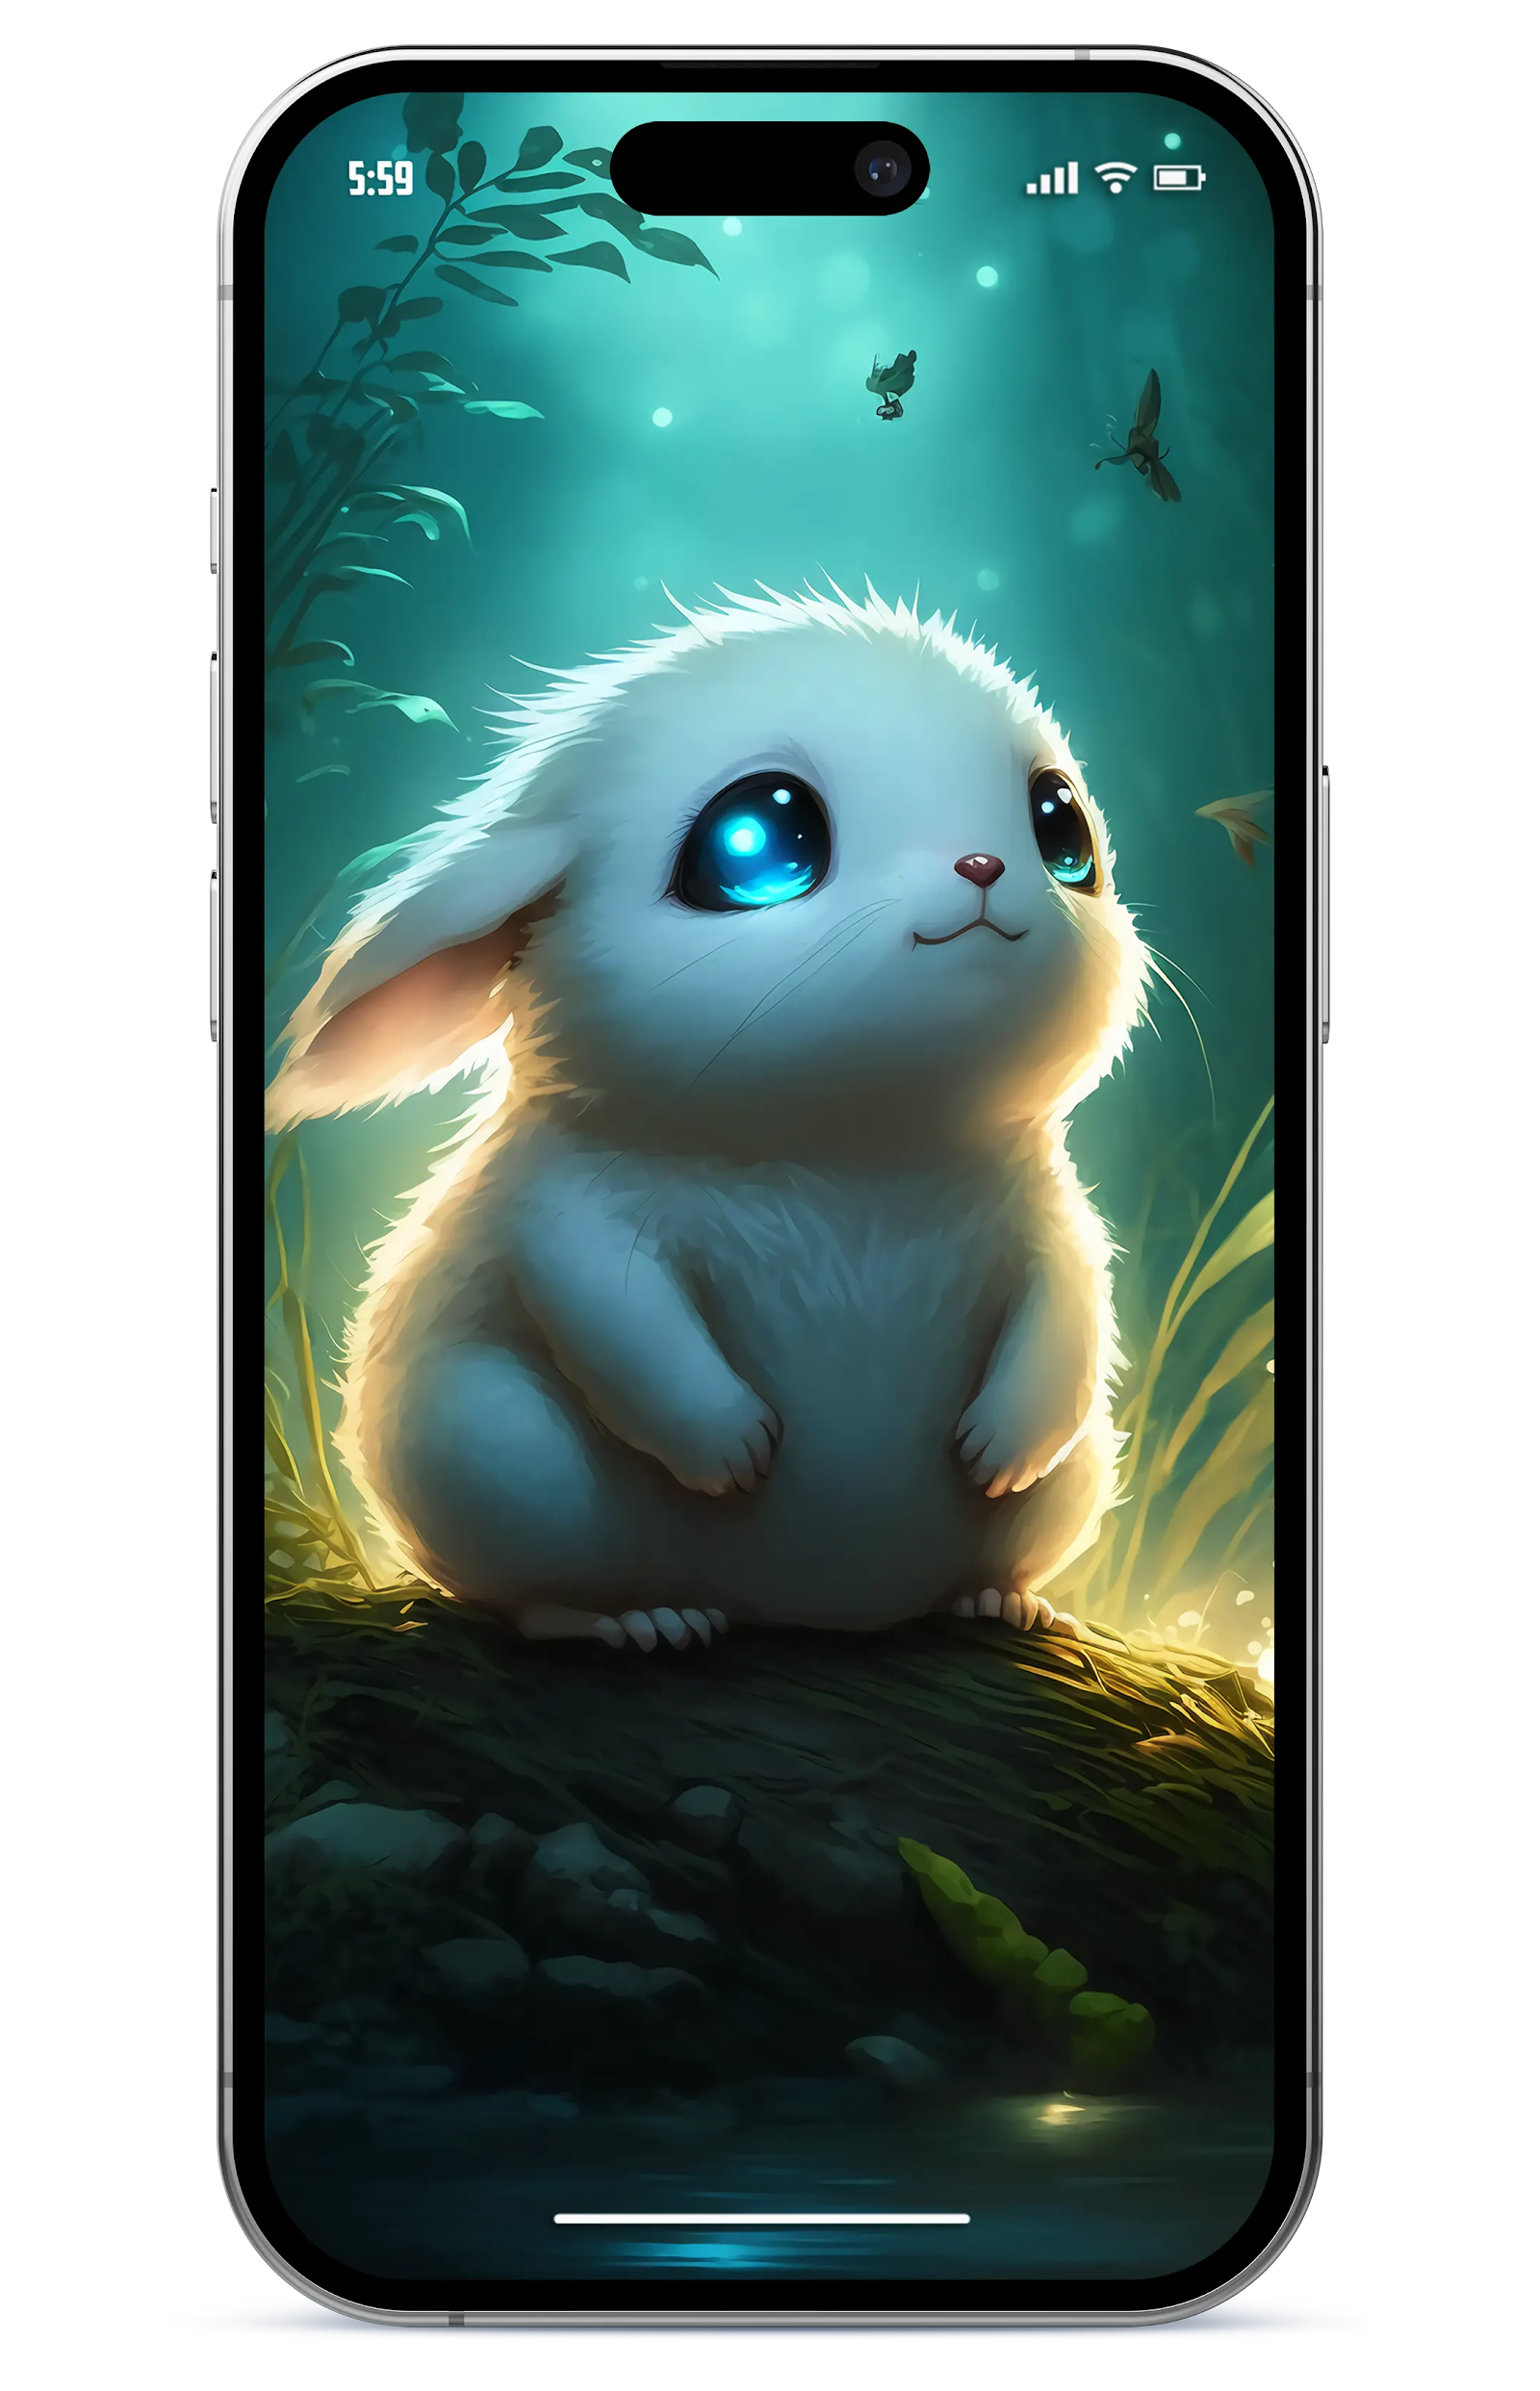 Thỏ luôn là biểu tượng của sự dễ thương và đáng yêu. Với những hình nền thỏ đáng yêu, bạn sẽ được thưởng thức vẻ đẹp ngọt ngào của loài thỏ, vừa tạo nên không gian trẻ trung, tươi vui cho người sử dụng điện thoại.